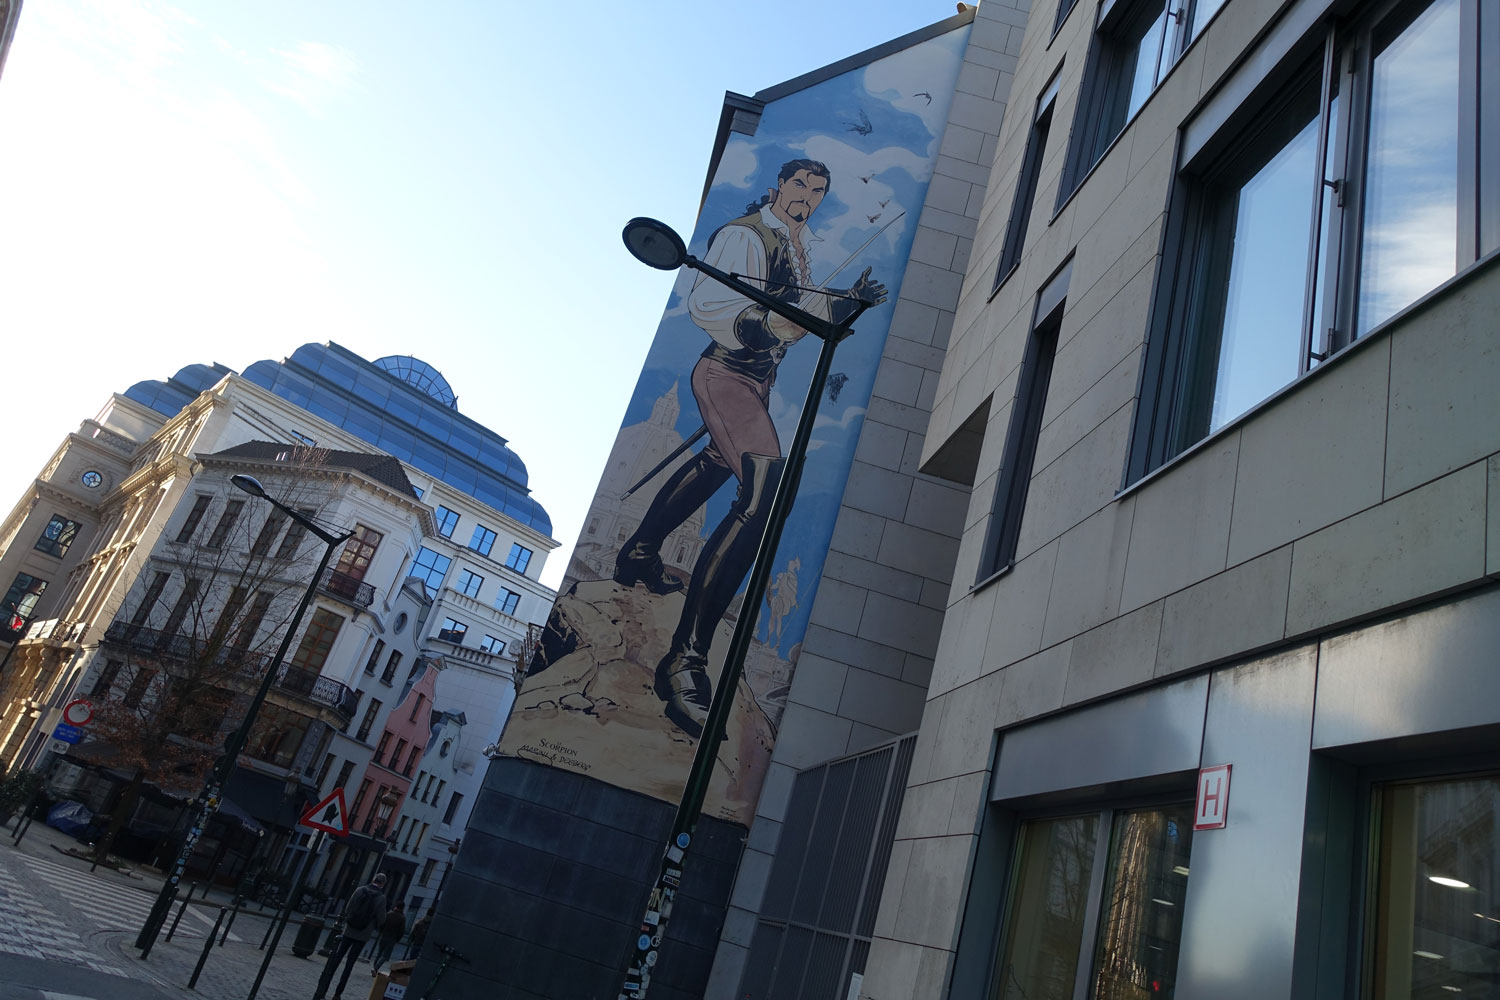 En sortant du journal, un mur peint avec un héros de BD. De nombreux murs du centre-ville de Bruxelles sont aux couleurs de la bande dessinée © Globe Reporters